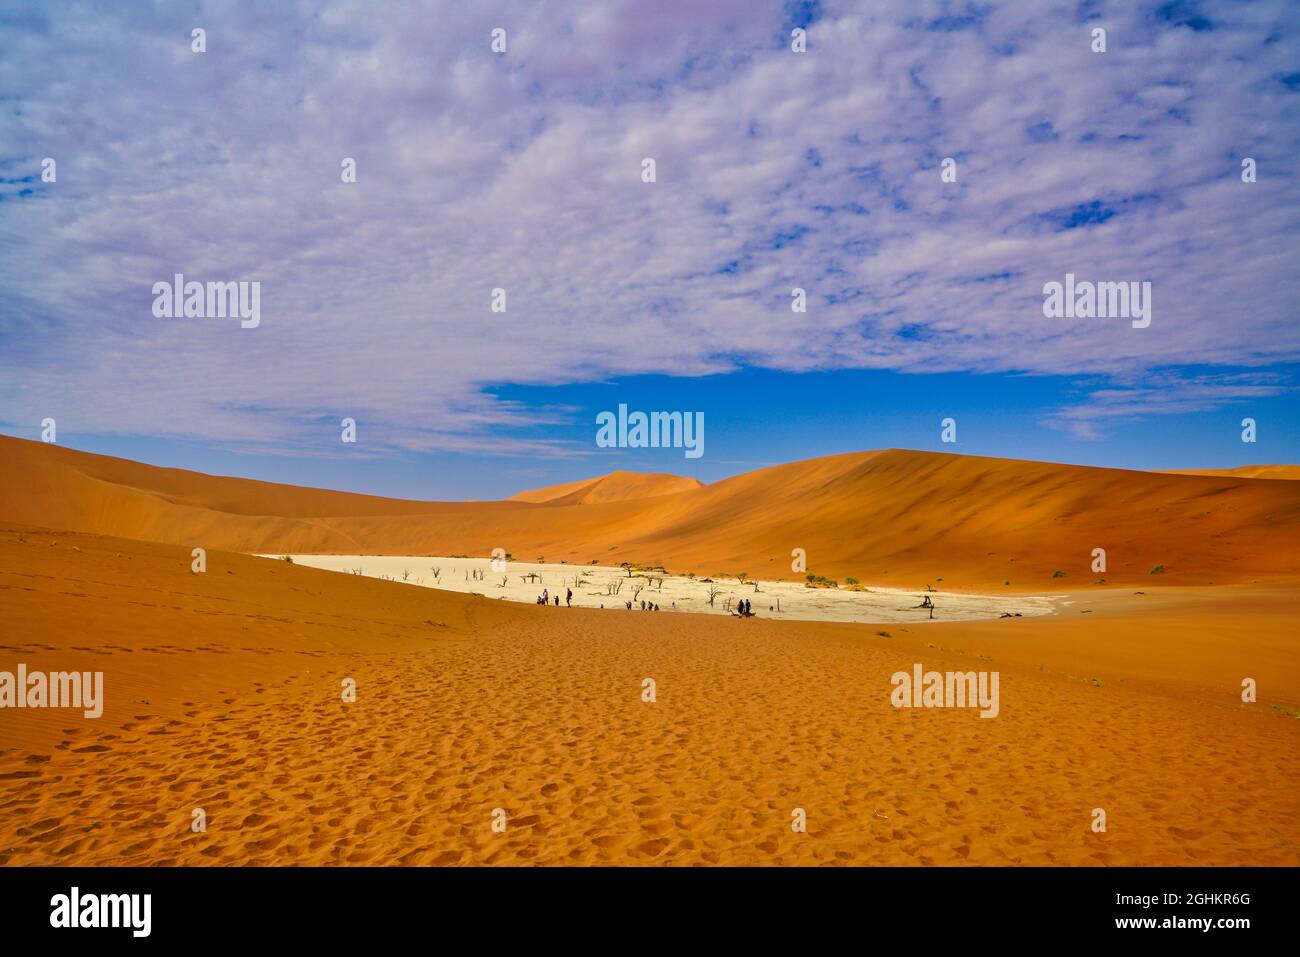 Le désert rouge, les arbres morts, et les touristes randonnée dans les dunes de sable. Sossusvlei est une casserole de sel et d'argile entourée de hautes dunes rouges, Namib-Naukluft Nati Banque D'Images